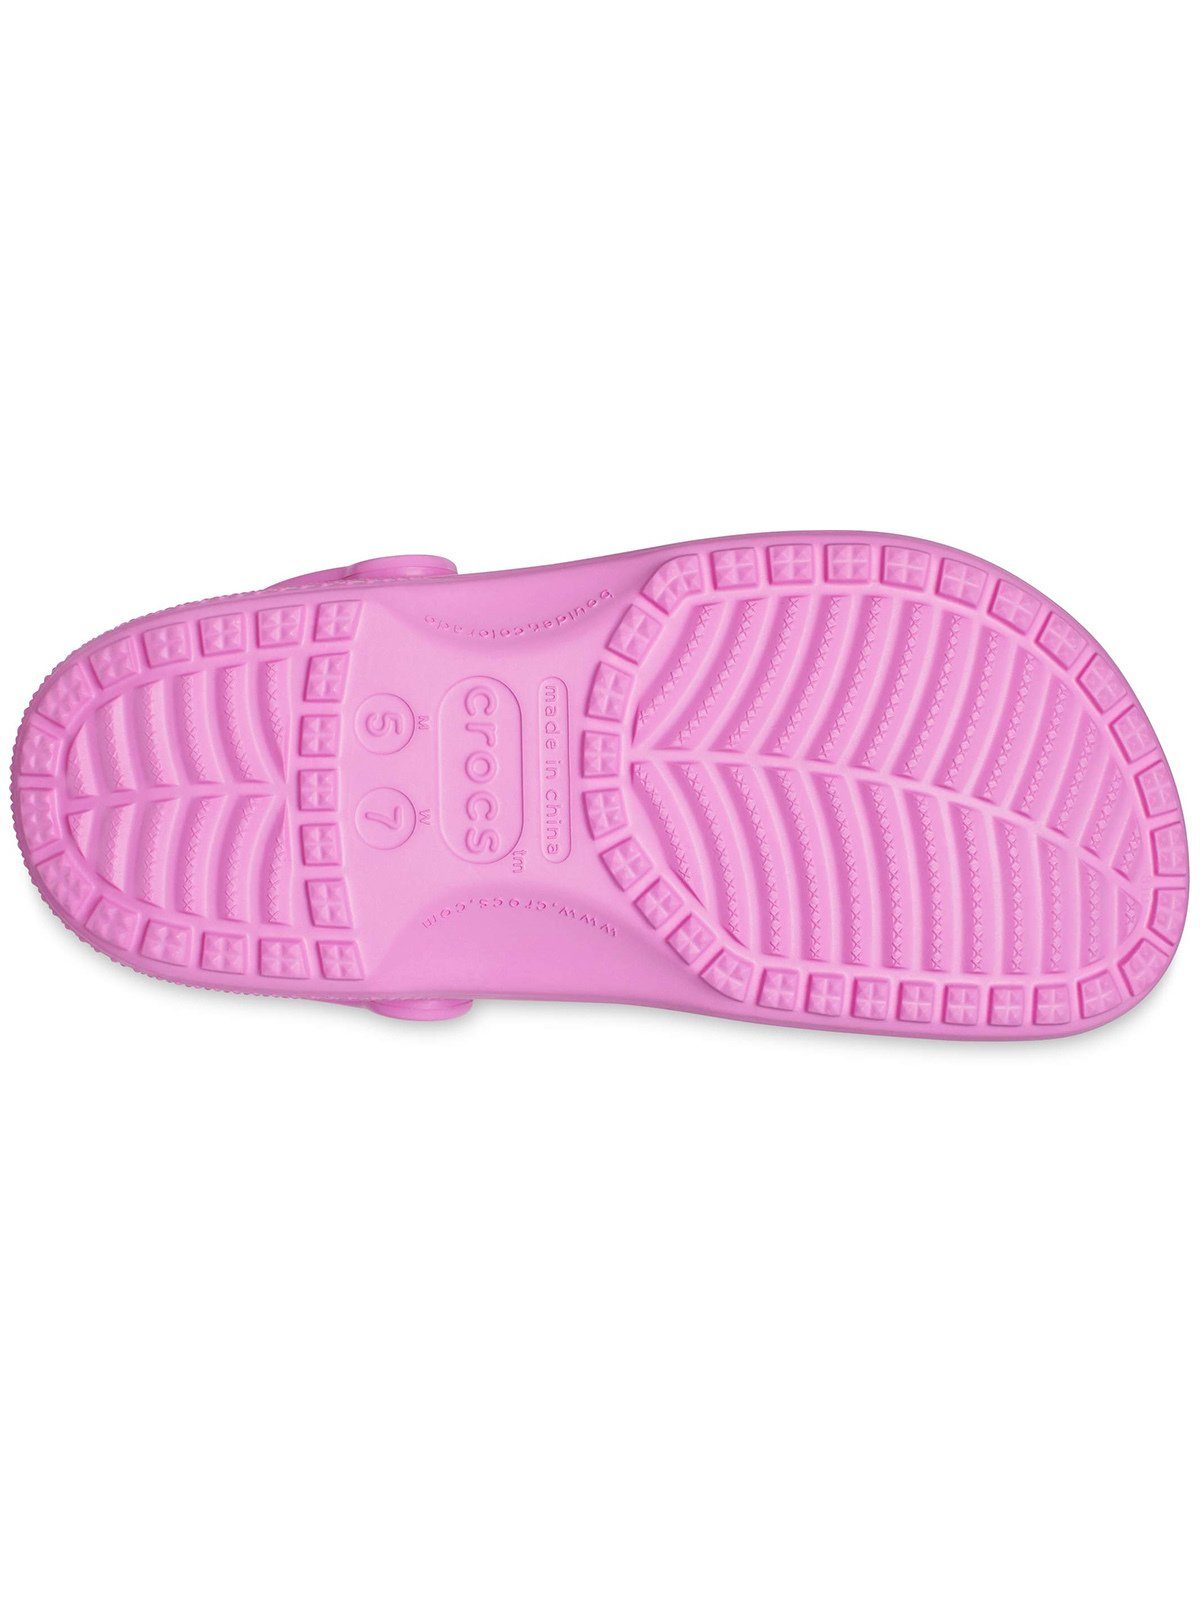 Crocs Crocs Clog Clog Classic pink taffy